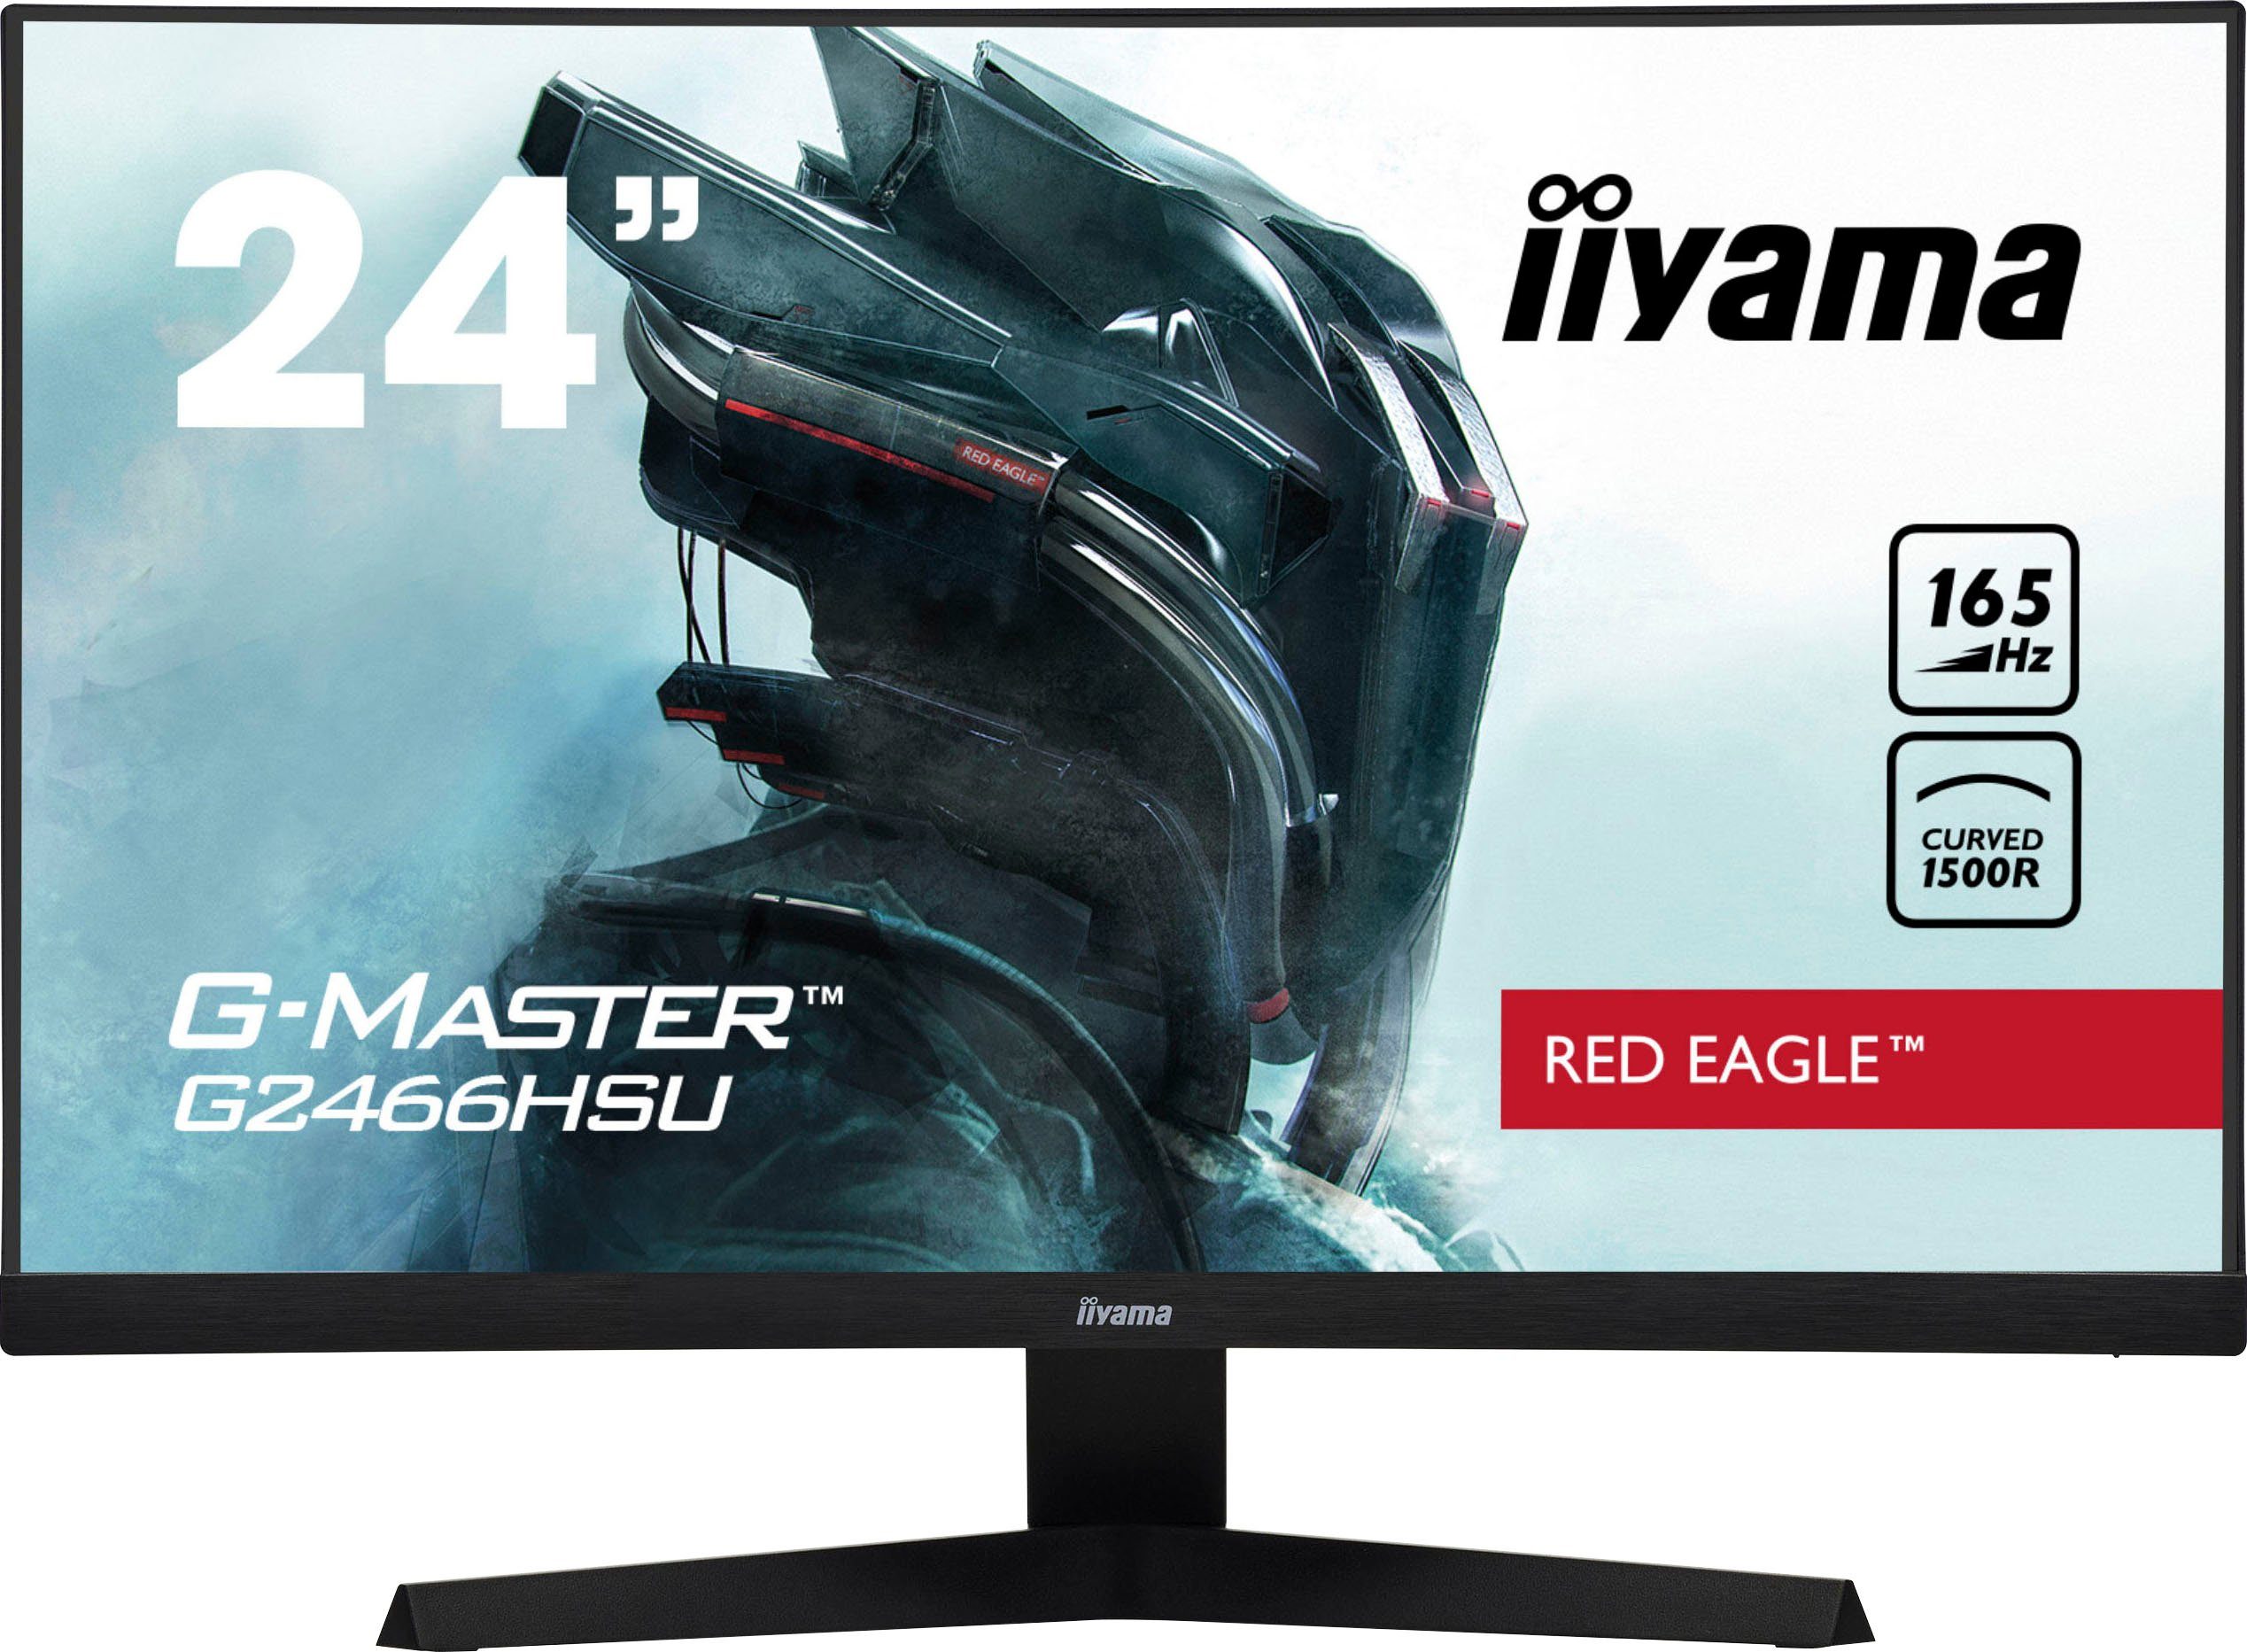 144-Hz-Monitor kaufen: Gaming-Full-HD-Bildschirme für rund 200 Euro |  STERN.de